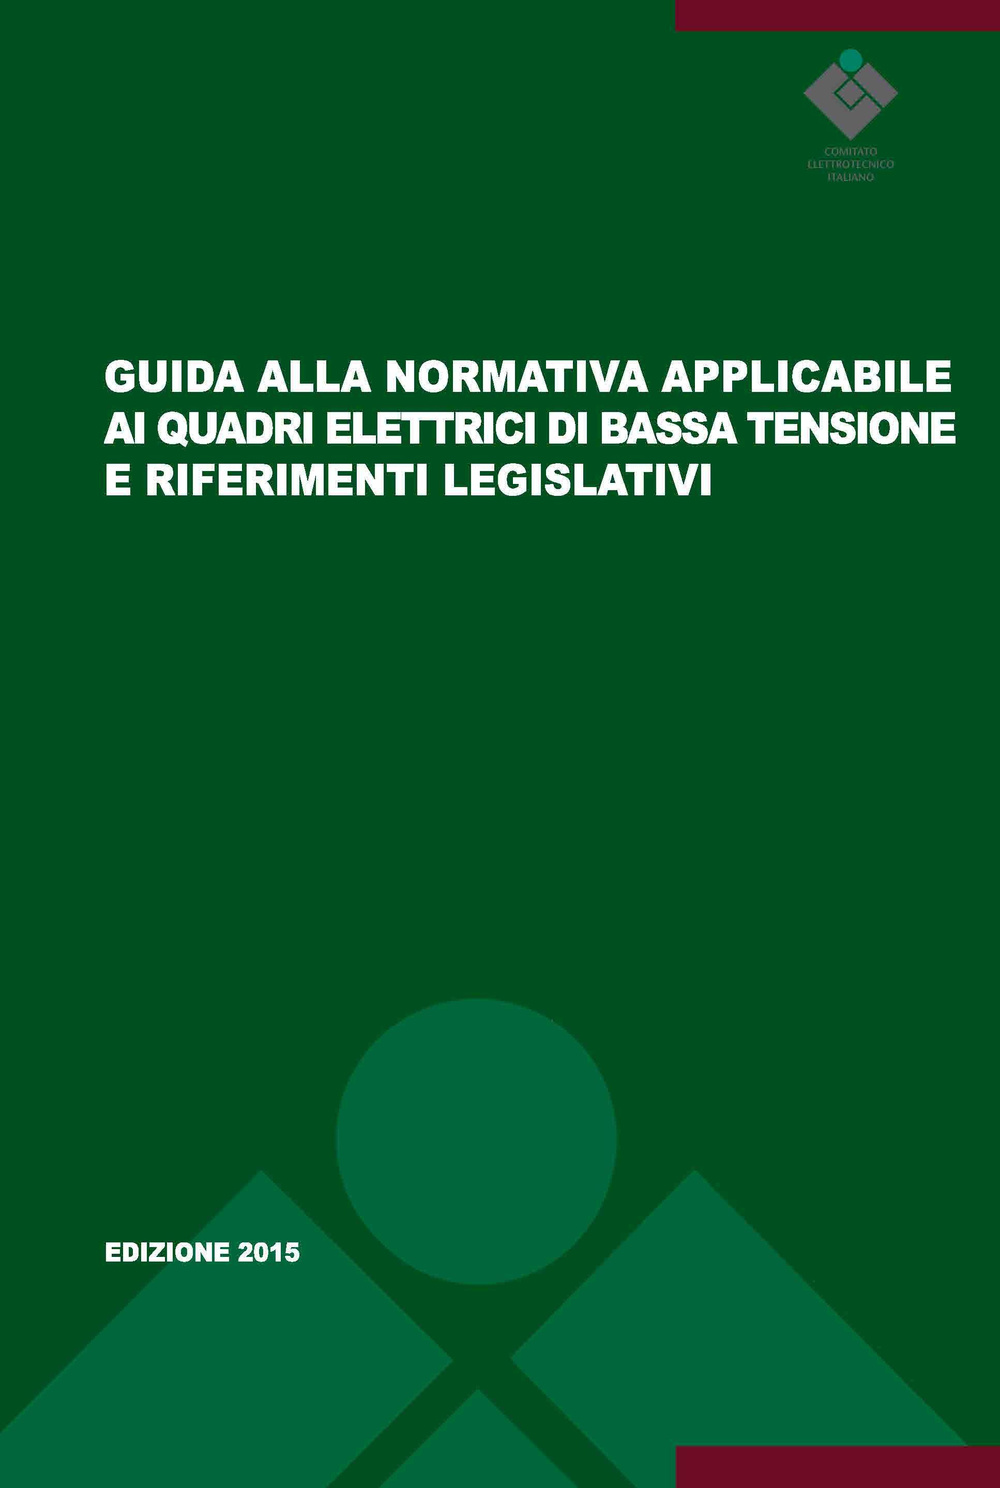 Guida alla normativa applicabile ai quadri elettrici di bassa tensione e riferimenti legislativi. Guida CEI 121-5